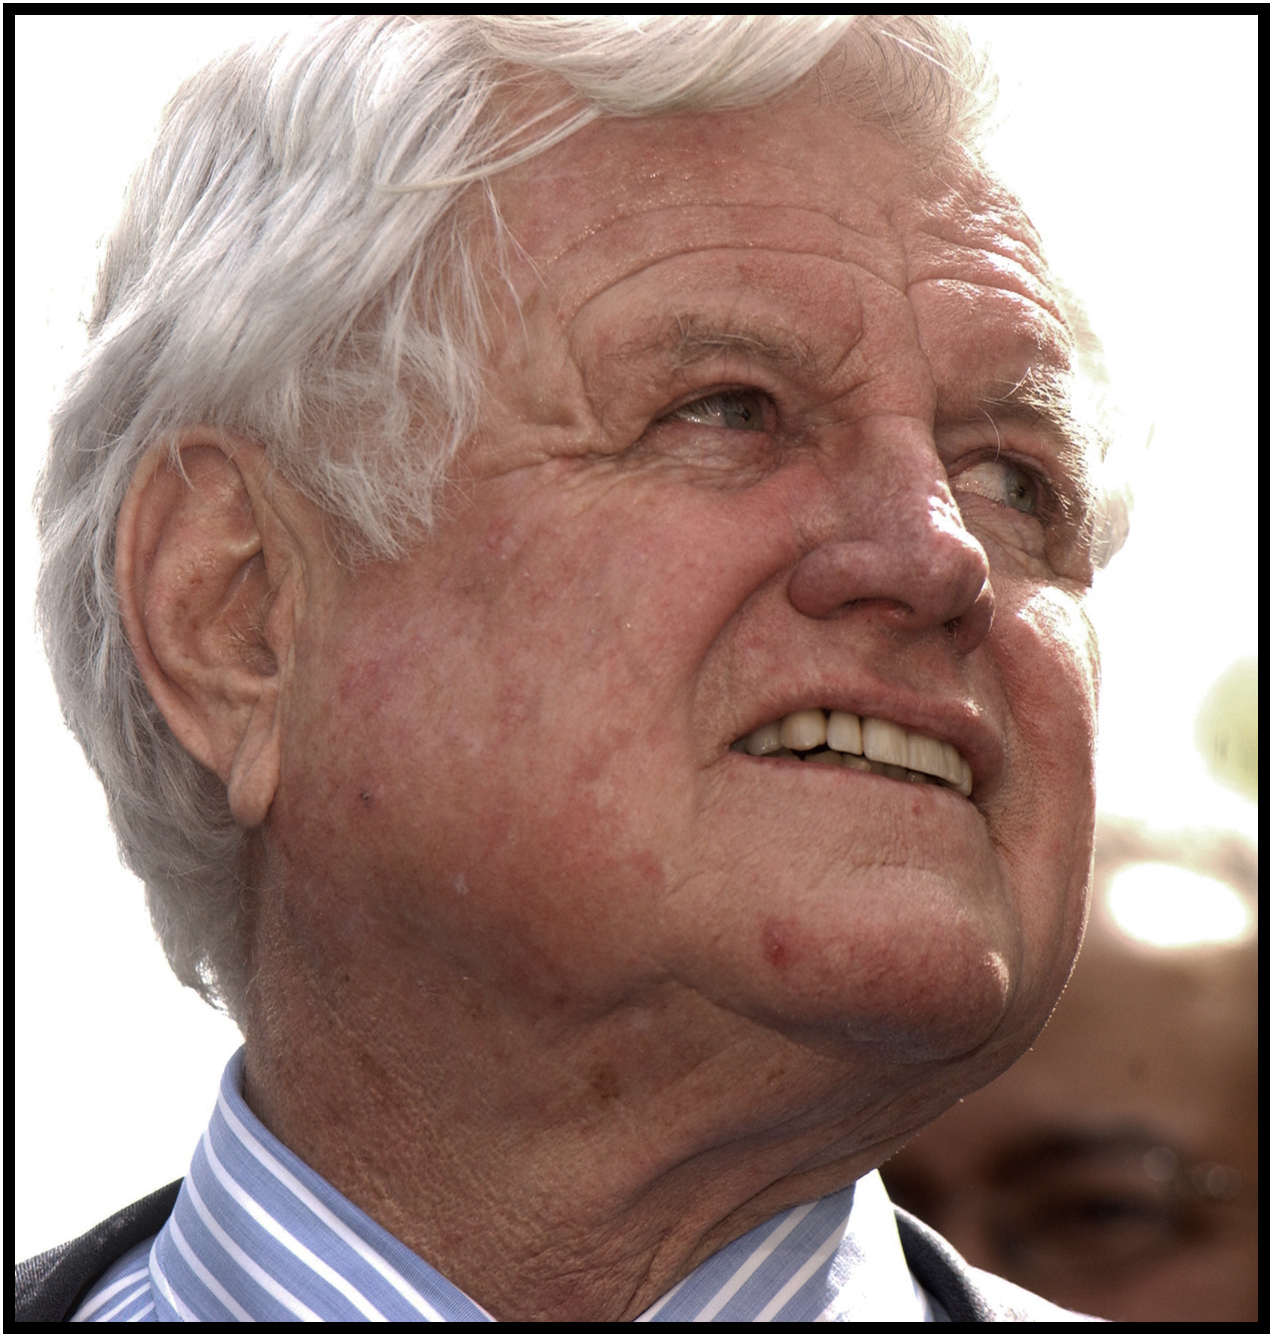  Edward (Ted) Kennedy, 2005. 